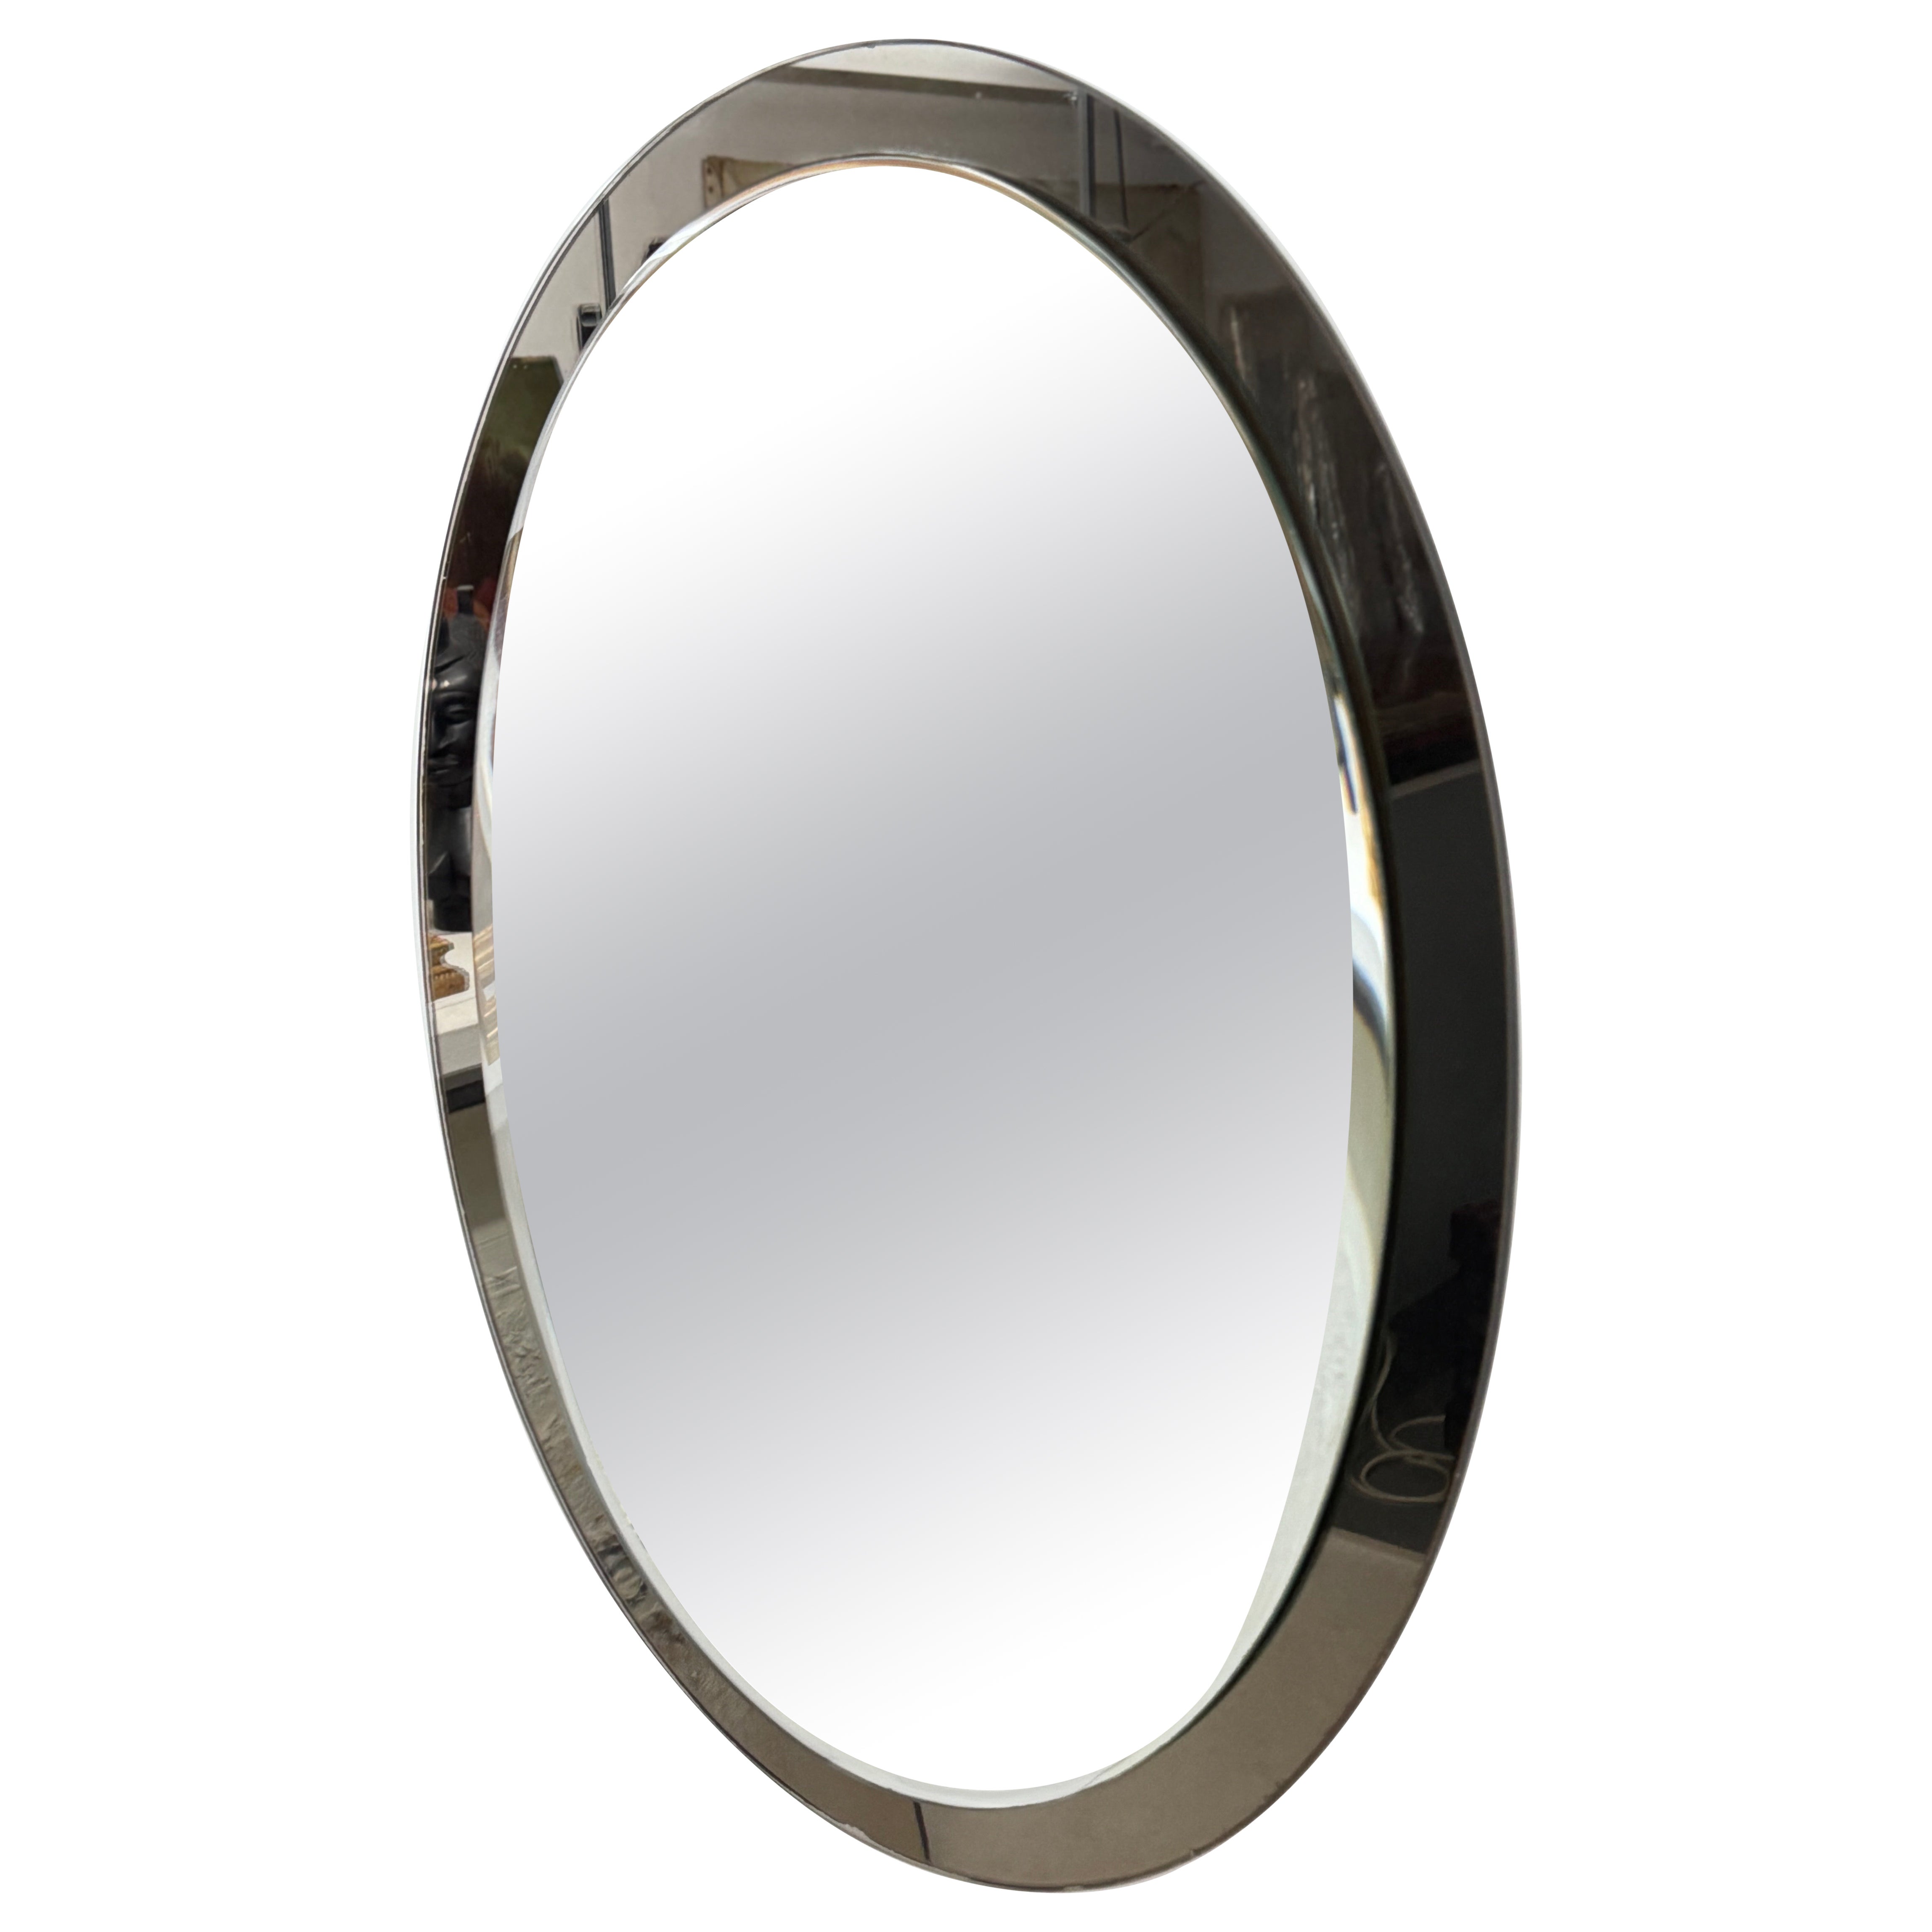 Oval Italian Twotone Mirror, Design: Antonio Lupi by Cristal Luxor 1960s